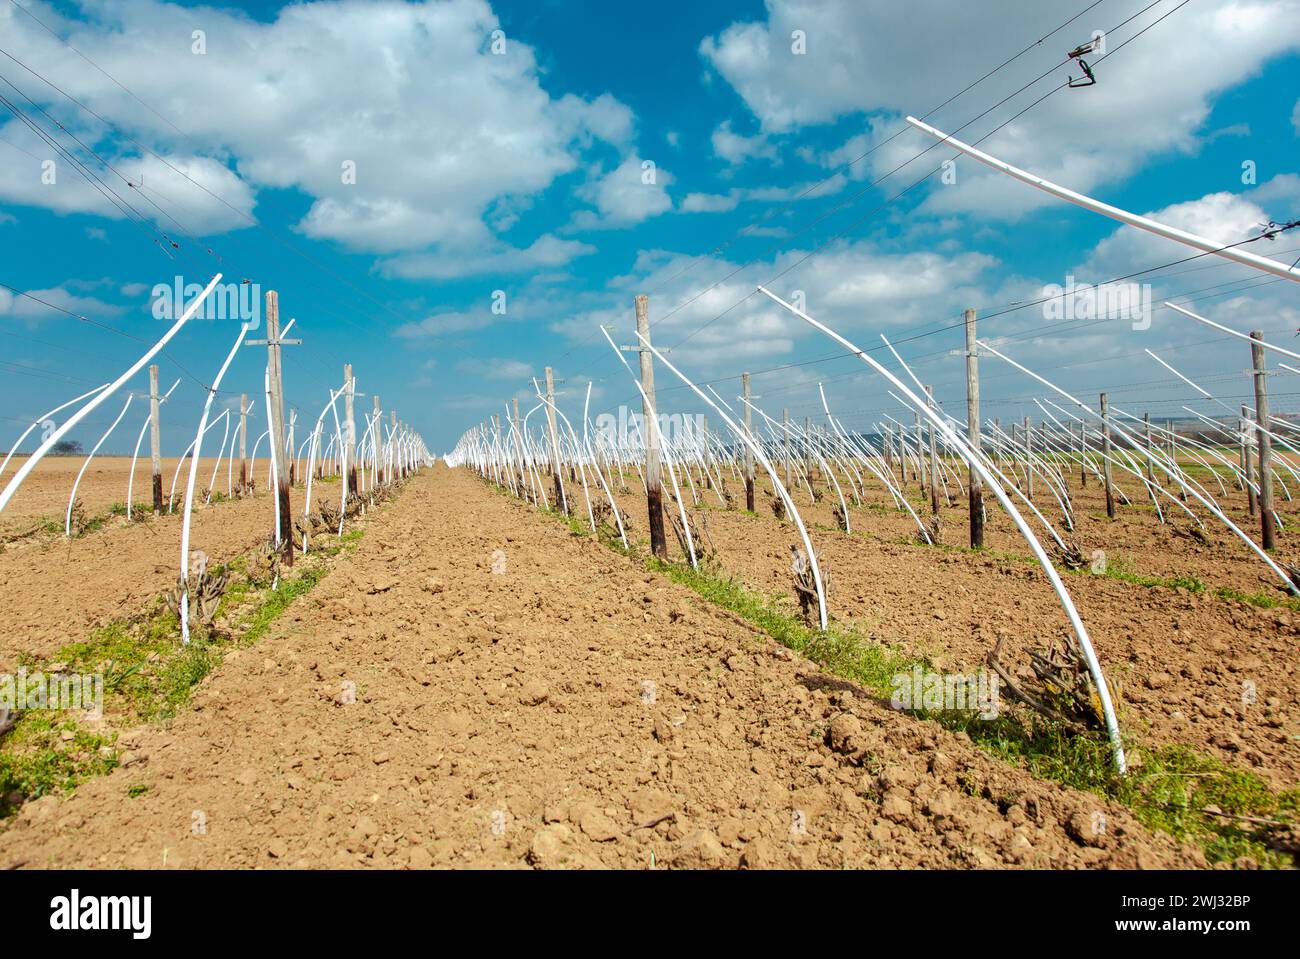 Weinberge Reihen von geschnittenen Reben nahe am Boden zwischen weißen Kunststoffpfosten. Die Ausbildung der Weinrebe im vit Stockfoto